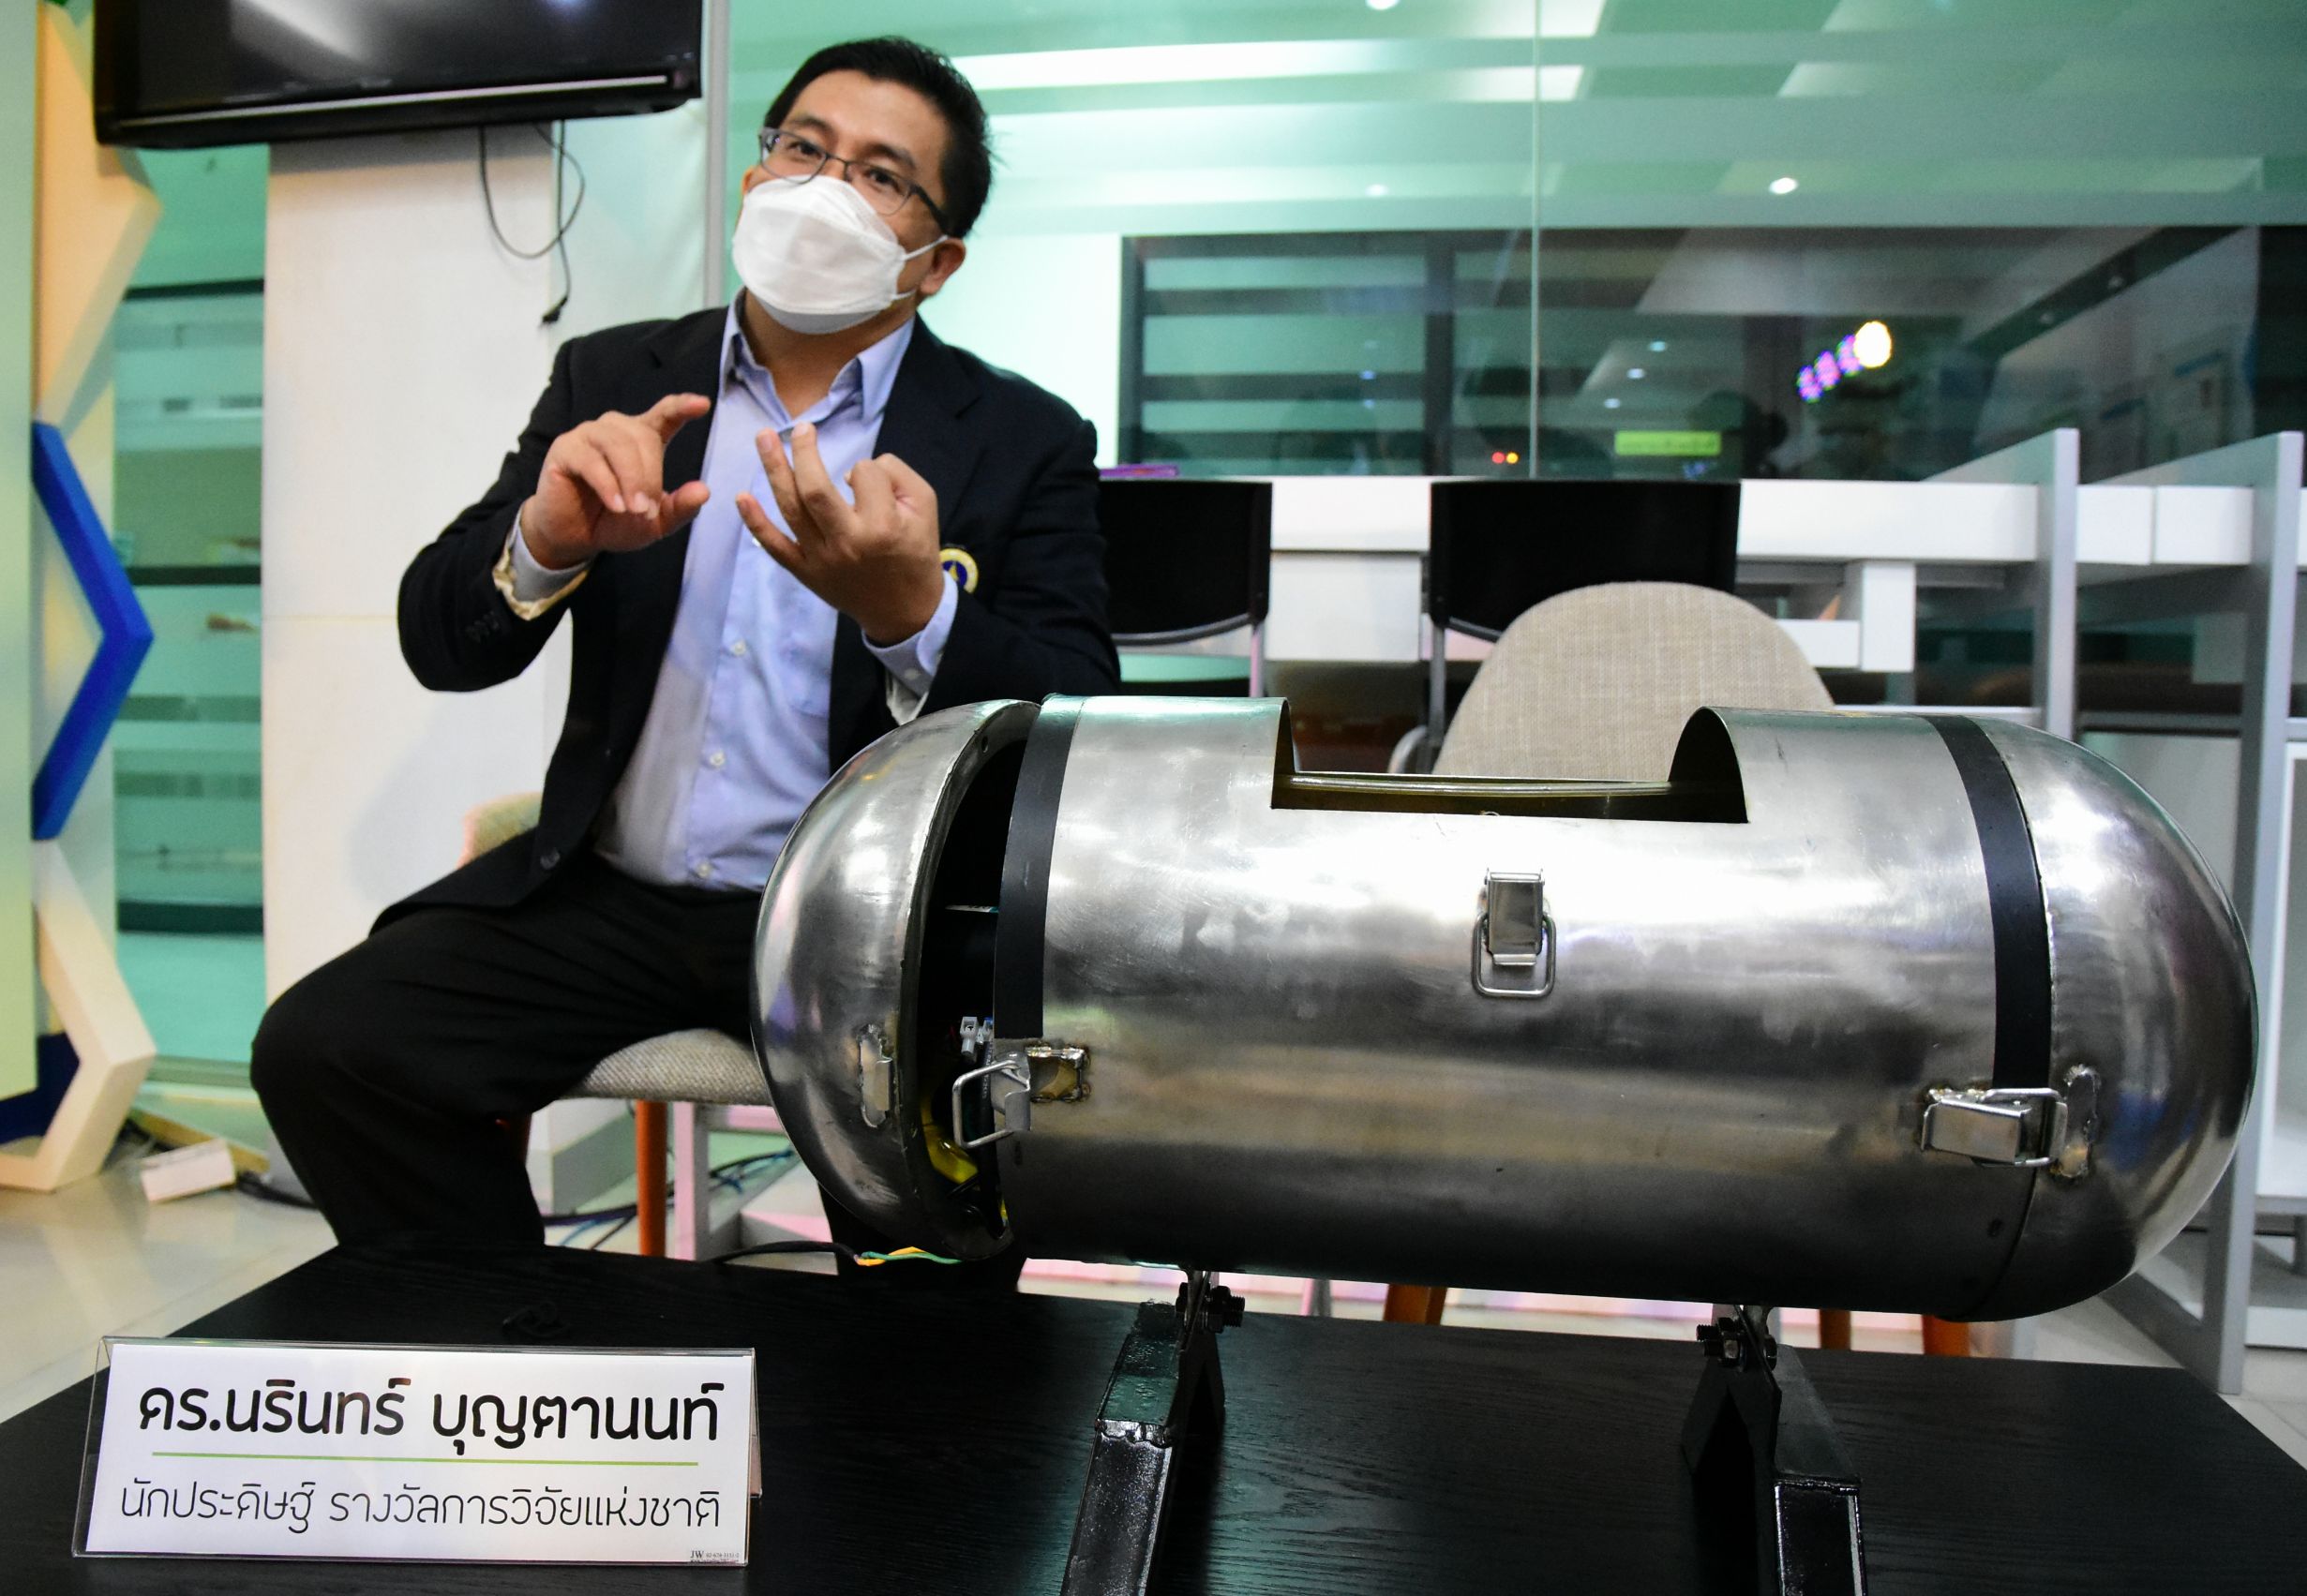 วช. เปิดตัว “เครื่องกำจัดขยะอินทรีย์ภายในครัวเรือน” ย่อยสลายขยะใน 48 ชม. รับรางวัลการวิจัยแห่งชาติ ปี 2564